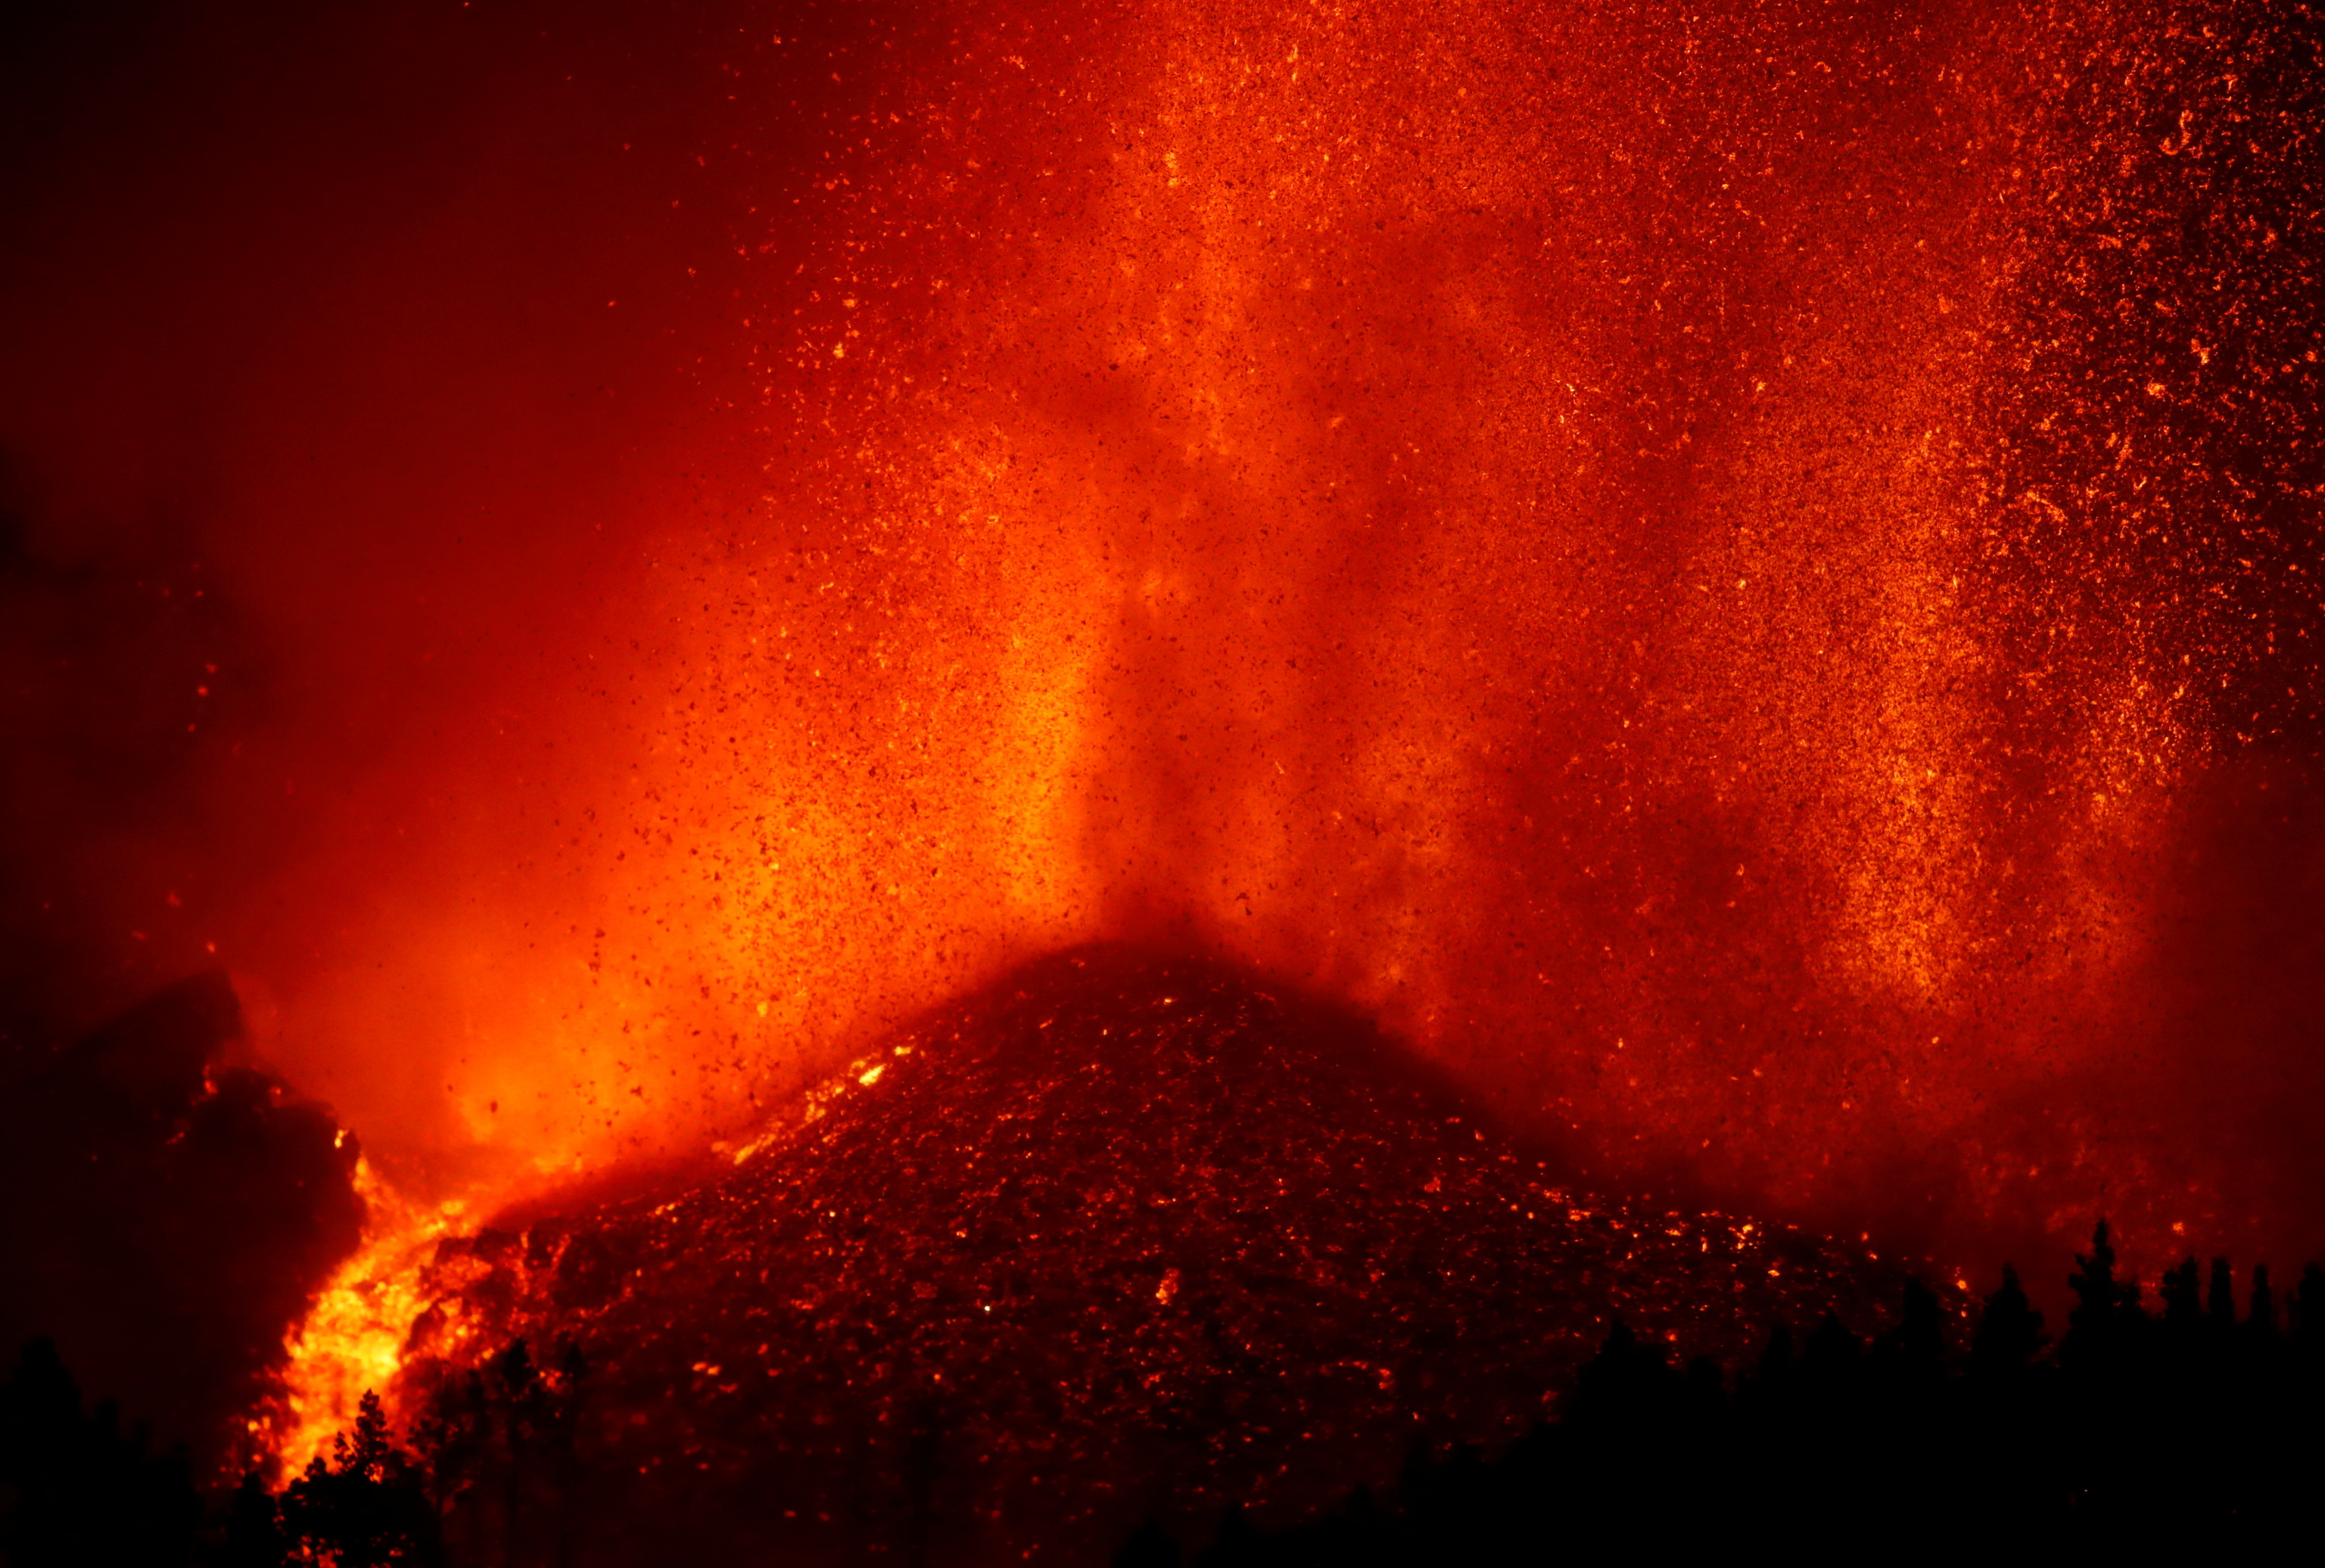 La erupción del volcán Cumbre Vieja en La Palma obliga a evacuar a miles de personas | Ciencia